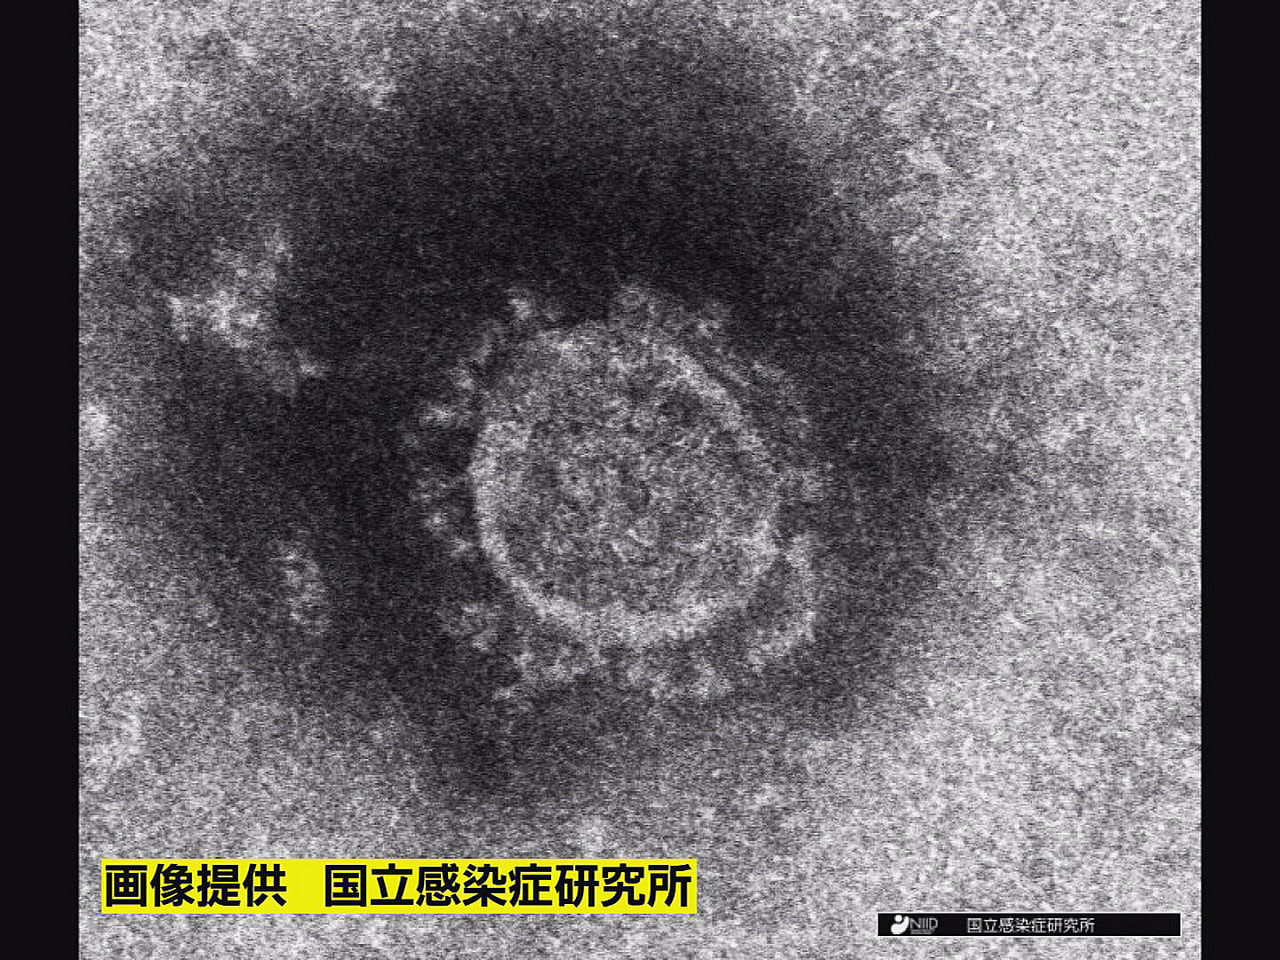 岐阜県は２９日、新型コロナウイルスの新規感染者が２７６人確認されたと発表しました...